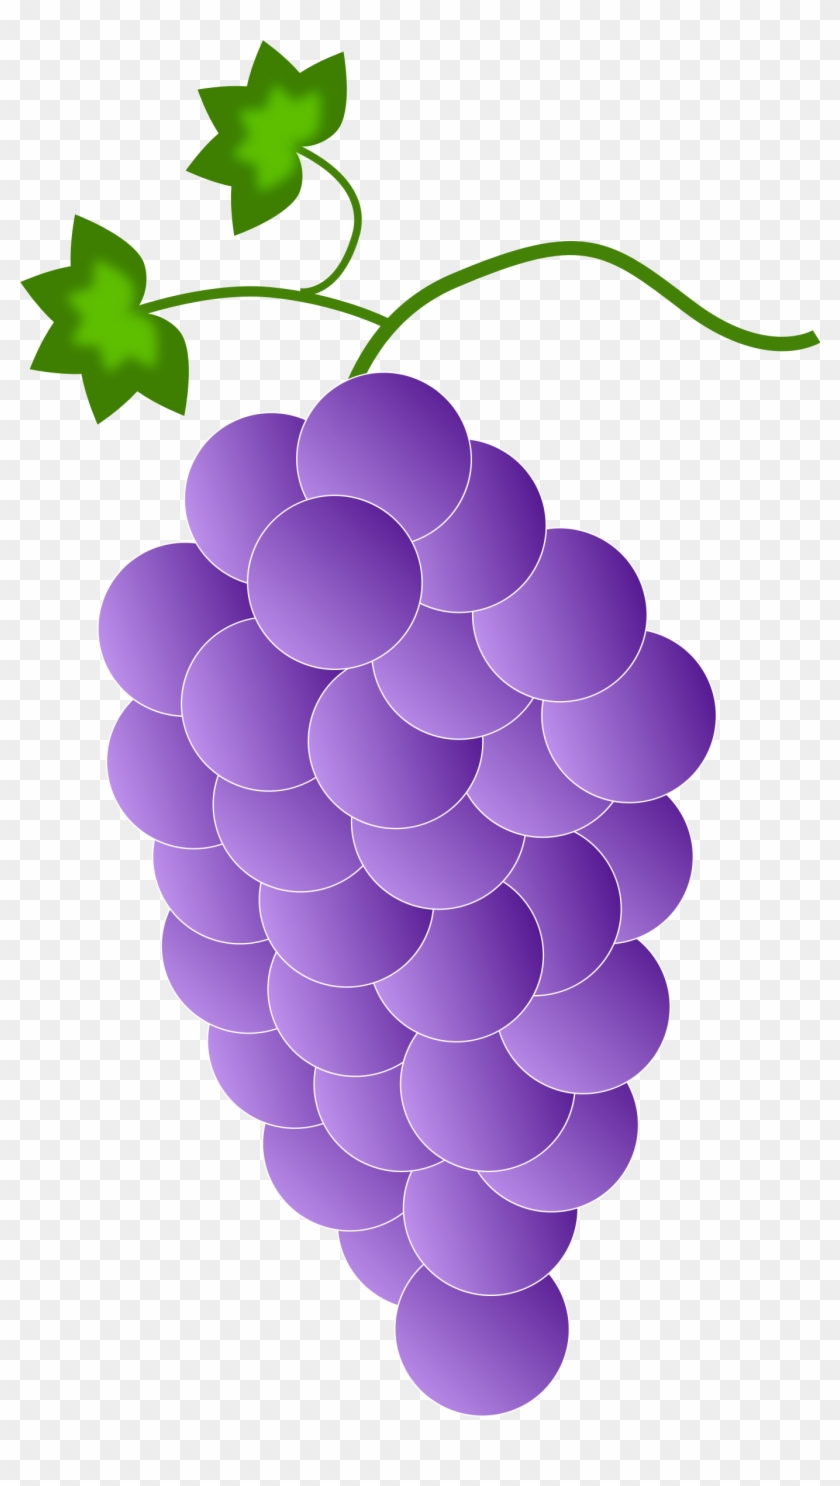 Black And White - Purple Grape's Clipart #2505532